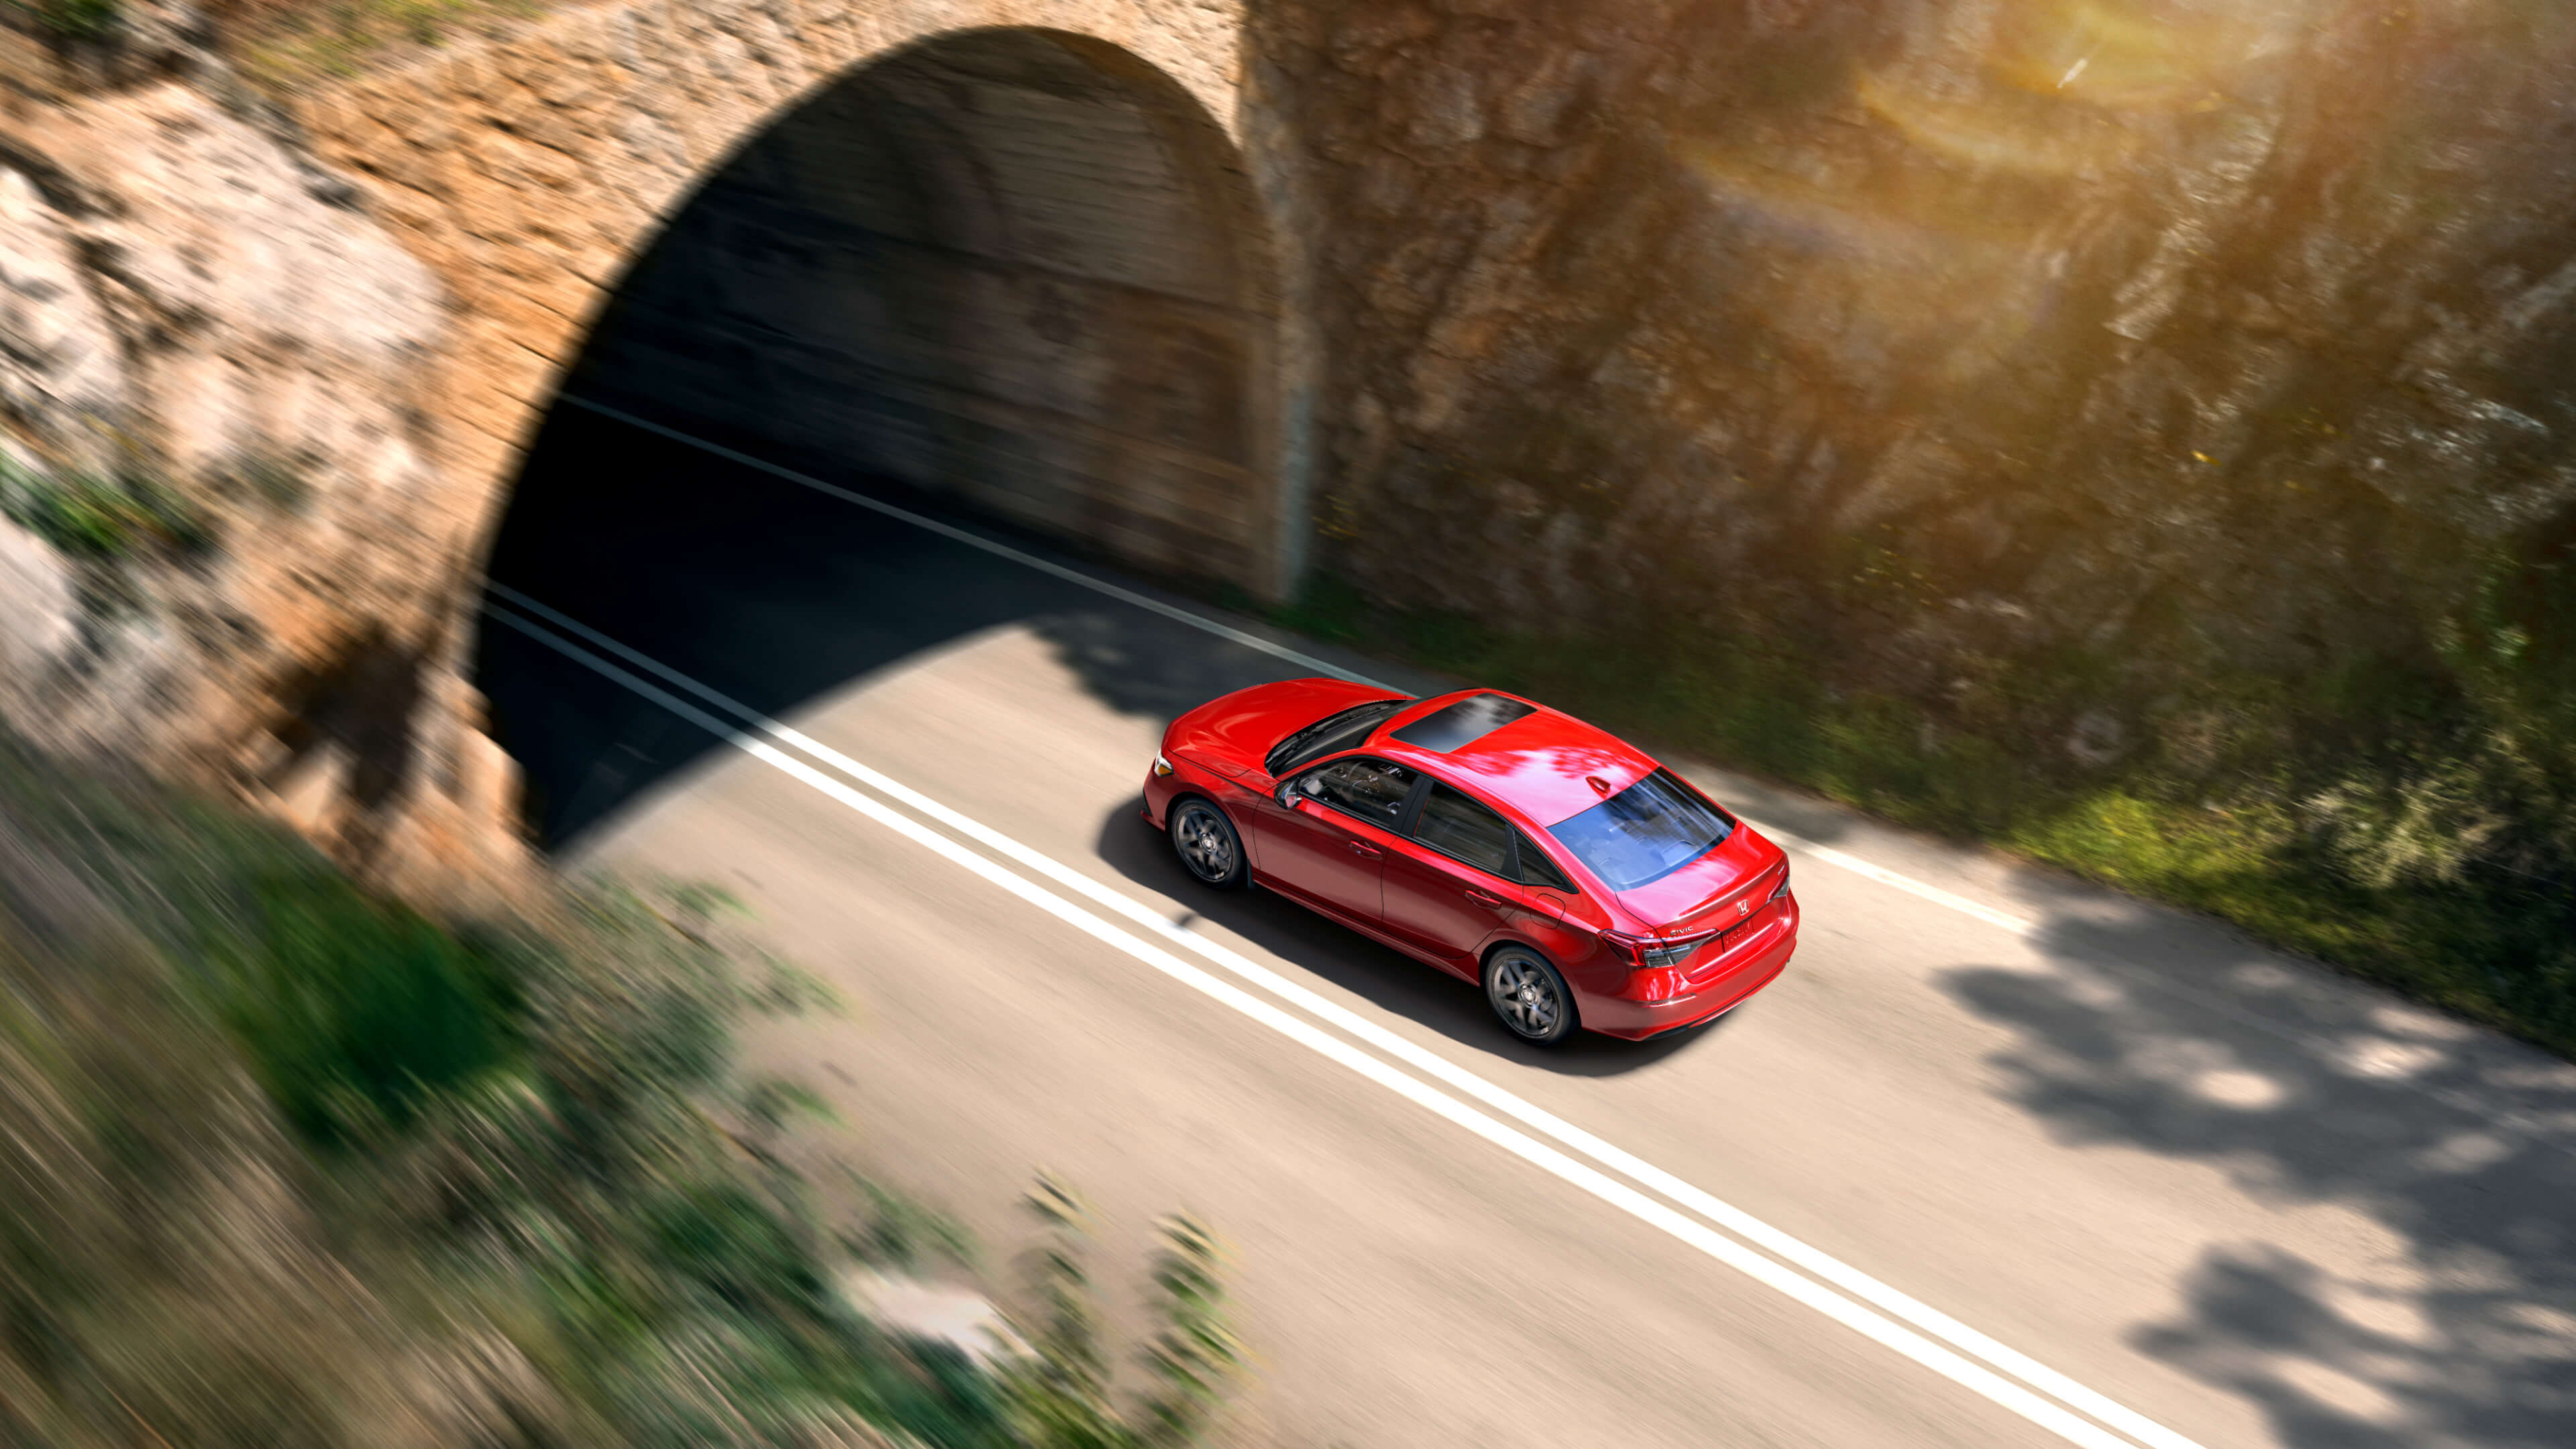 Plan panoramique en vue plongeante d’une Honda Civic 2022 rouge sur le point de traverser un tunnel en pierre.